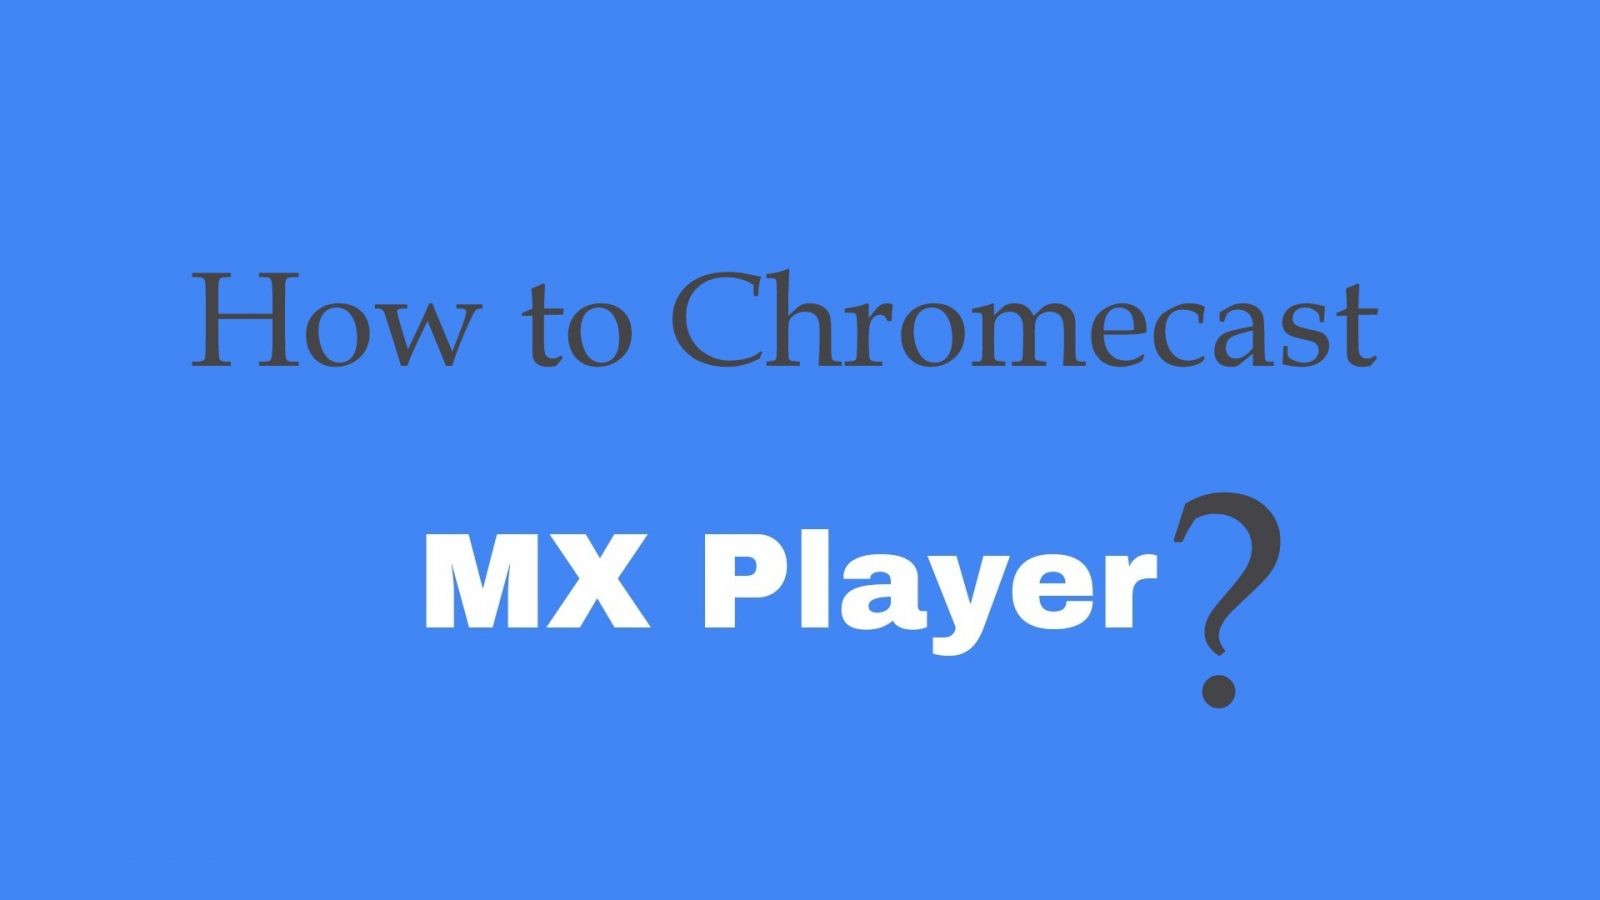 How to Chromecast MX Player to TV